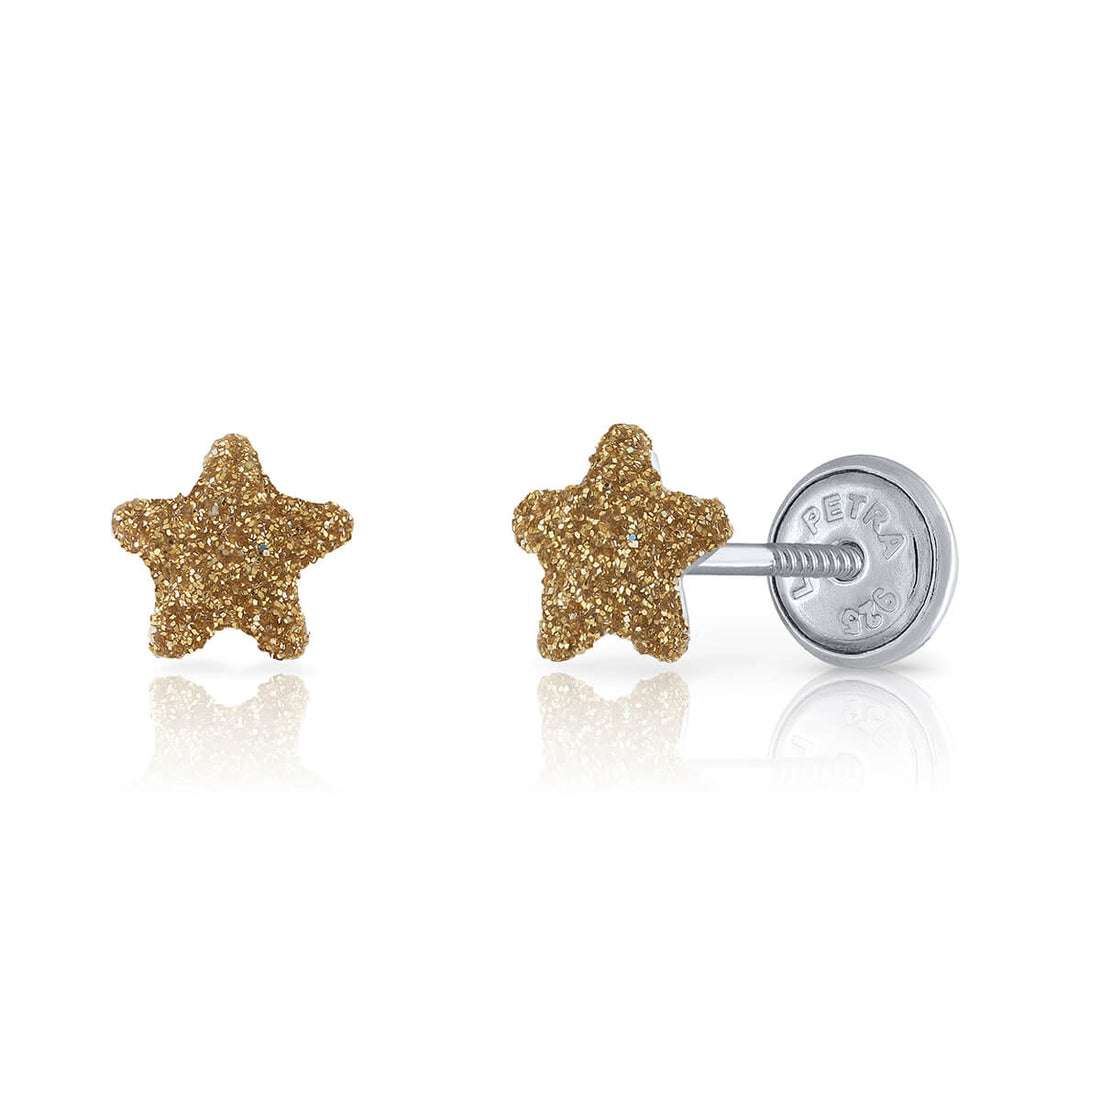 Zilveren kinderoorbellen: Gouden ster met schroefsluiting (Lapetra)